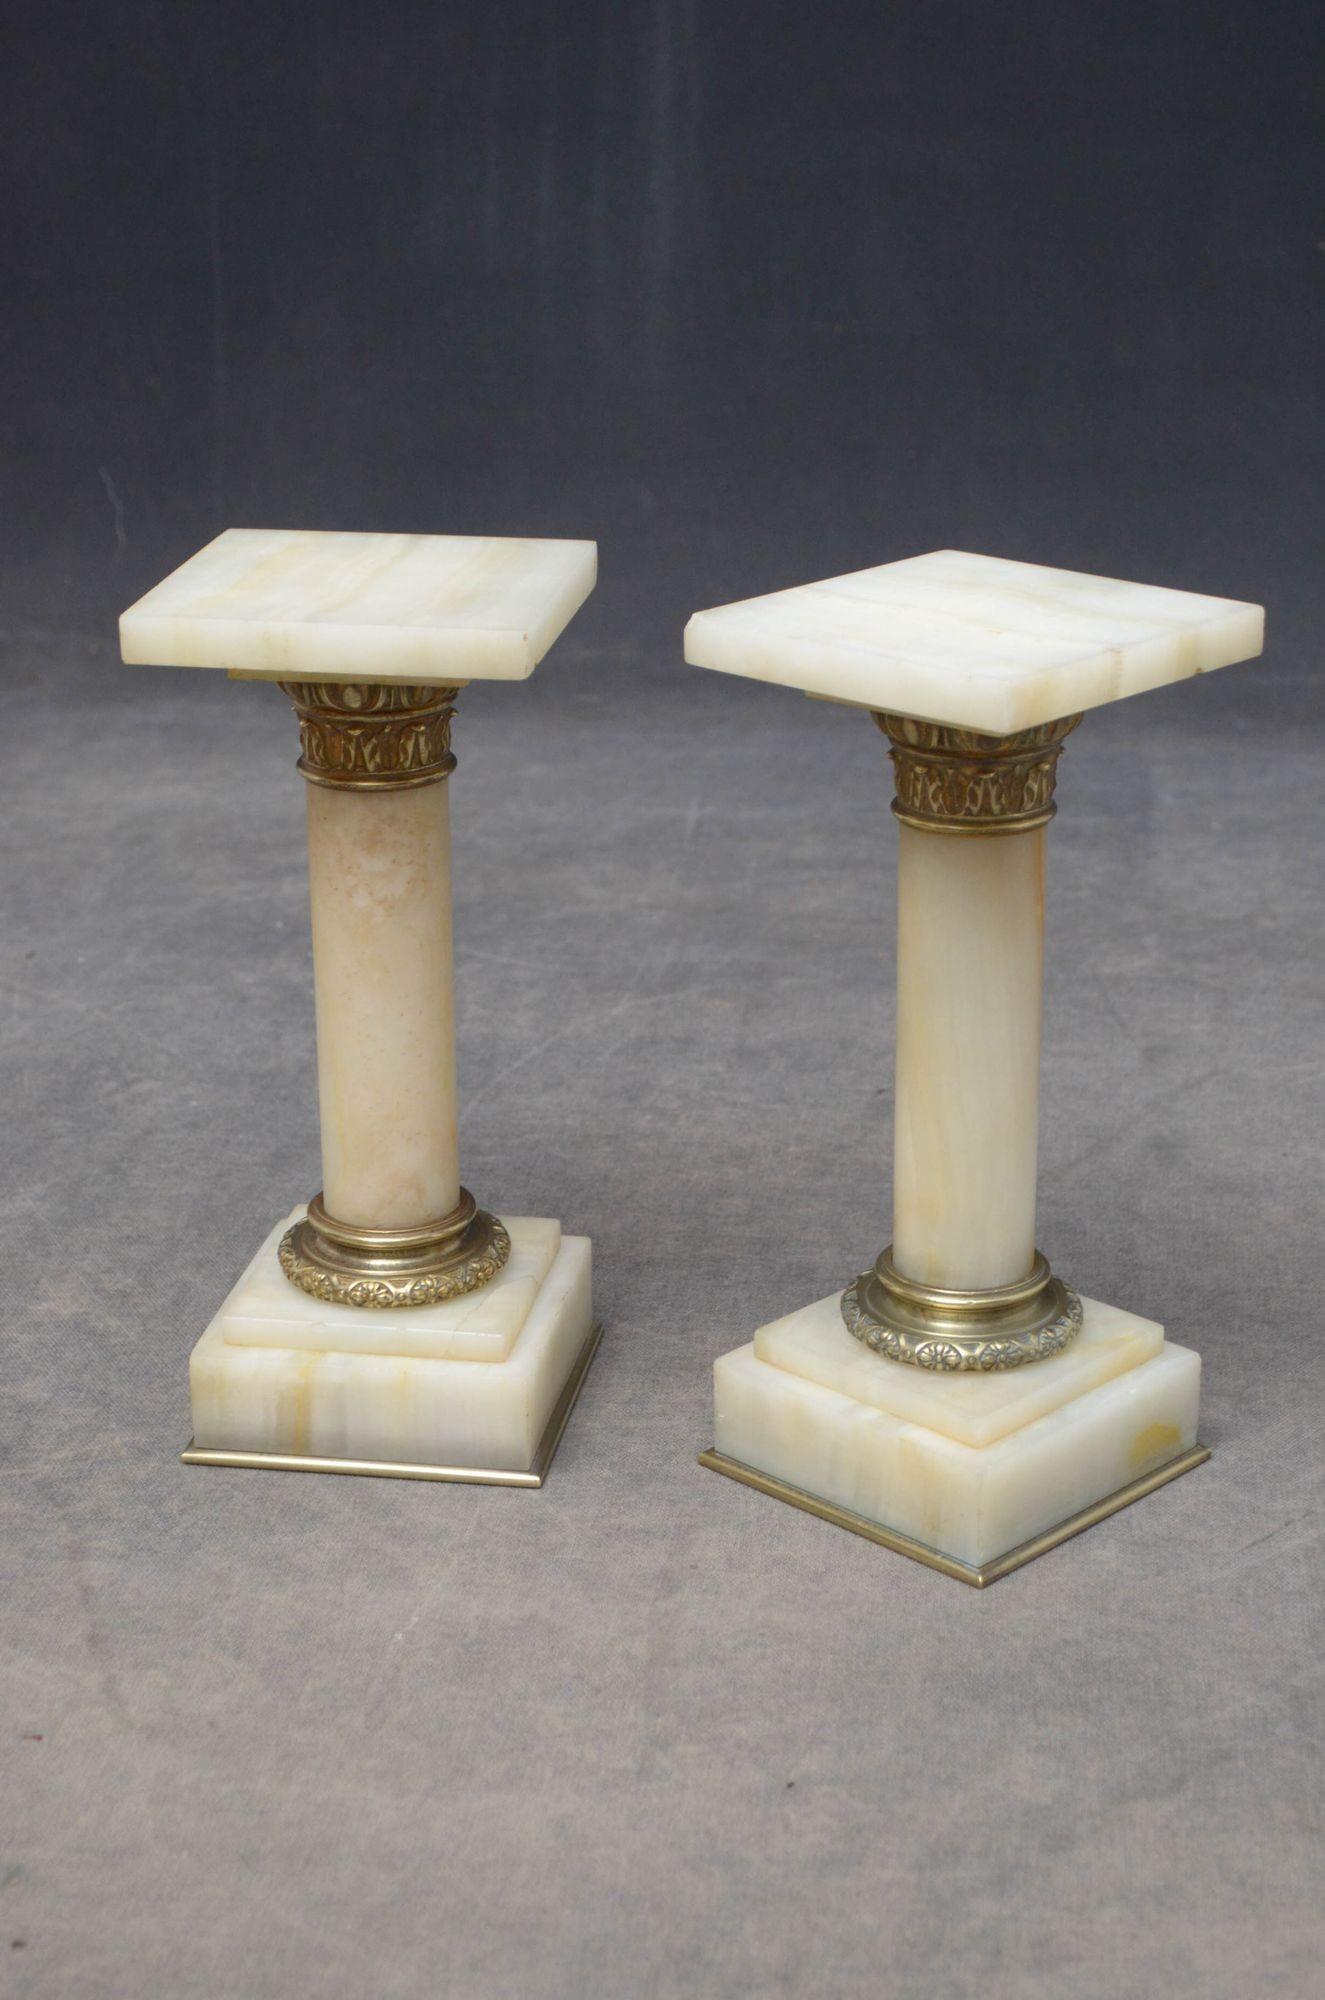 K081, ein seltenes Paar antiker Marmorsäulen aus weißem, geädertem Marmor, jede mit einer quadratischen Plattform (eine mit einem kleinen Chip an der Ecke), Messingkragen, geäderten Säulen, die in einem Messingkragen enden, und gestuftem, geädertem